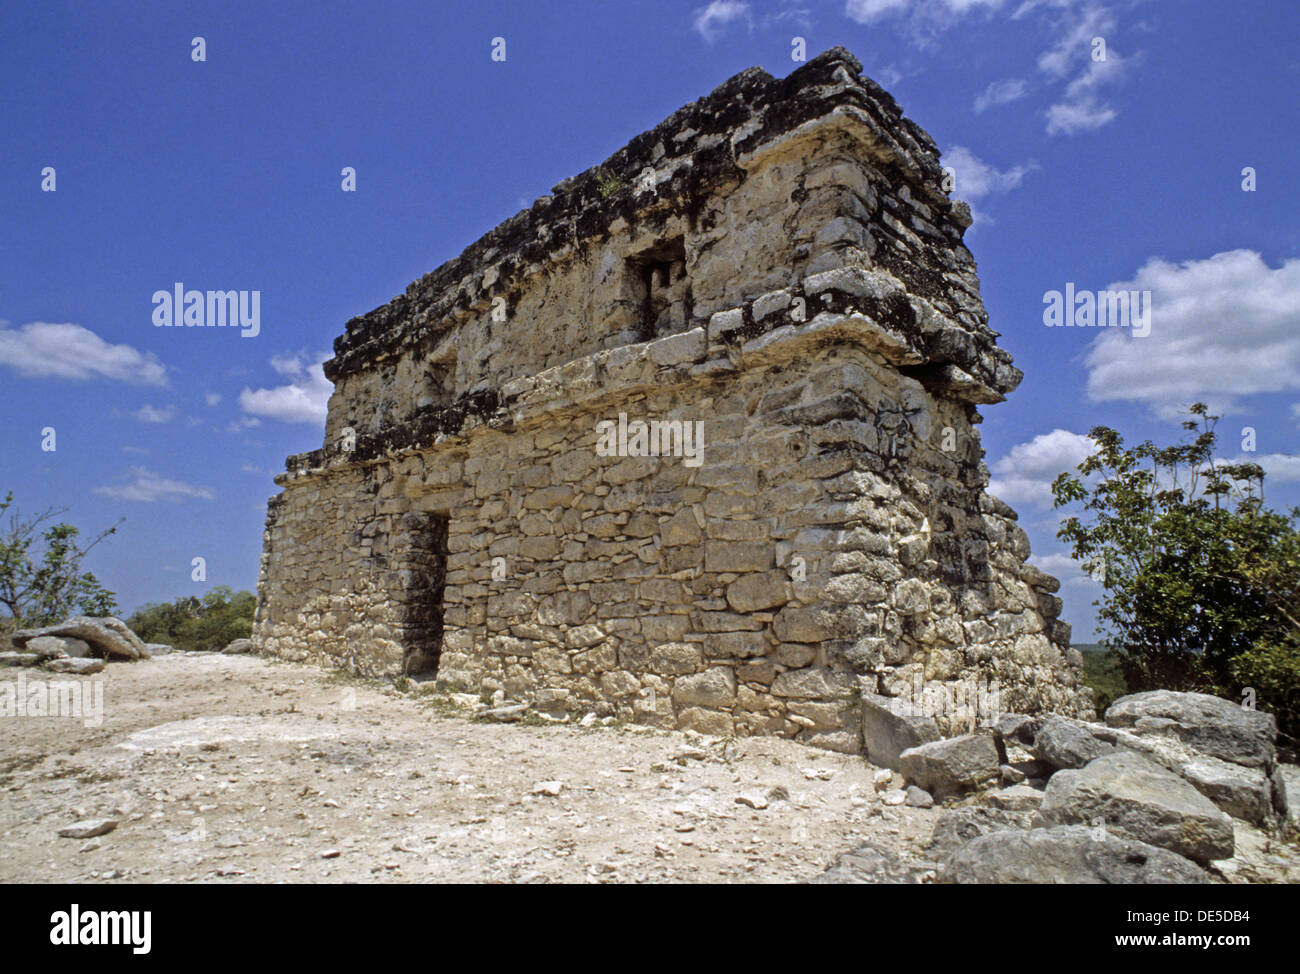 Coba, ville en ruines de la civilisation maya précolombienne. Quintana Roo, Mexique Banque D'Images